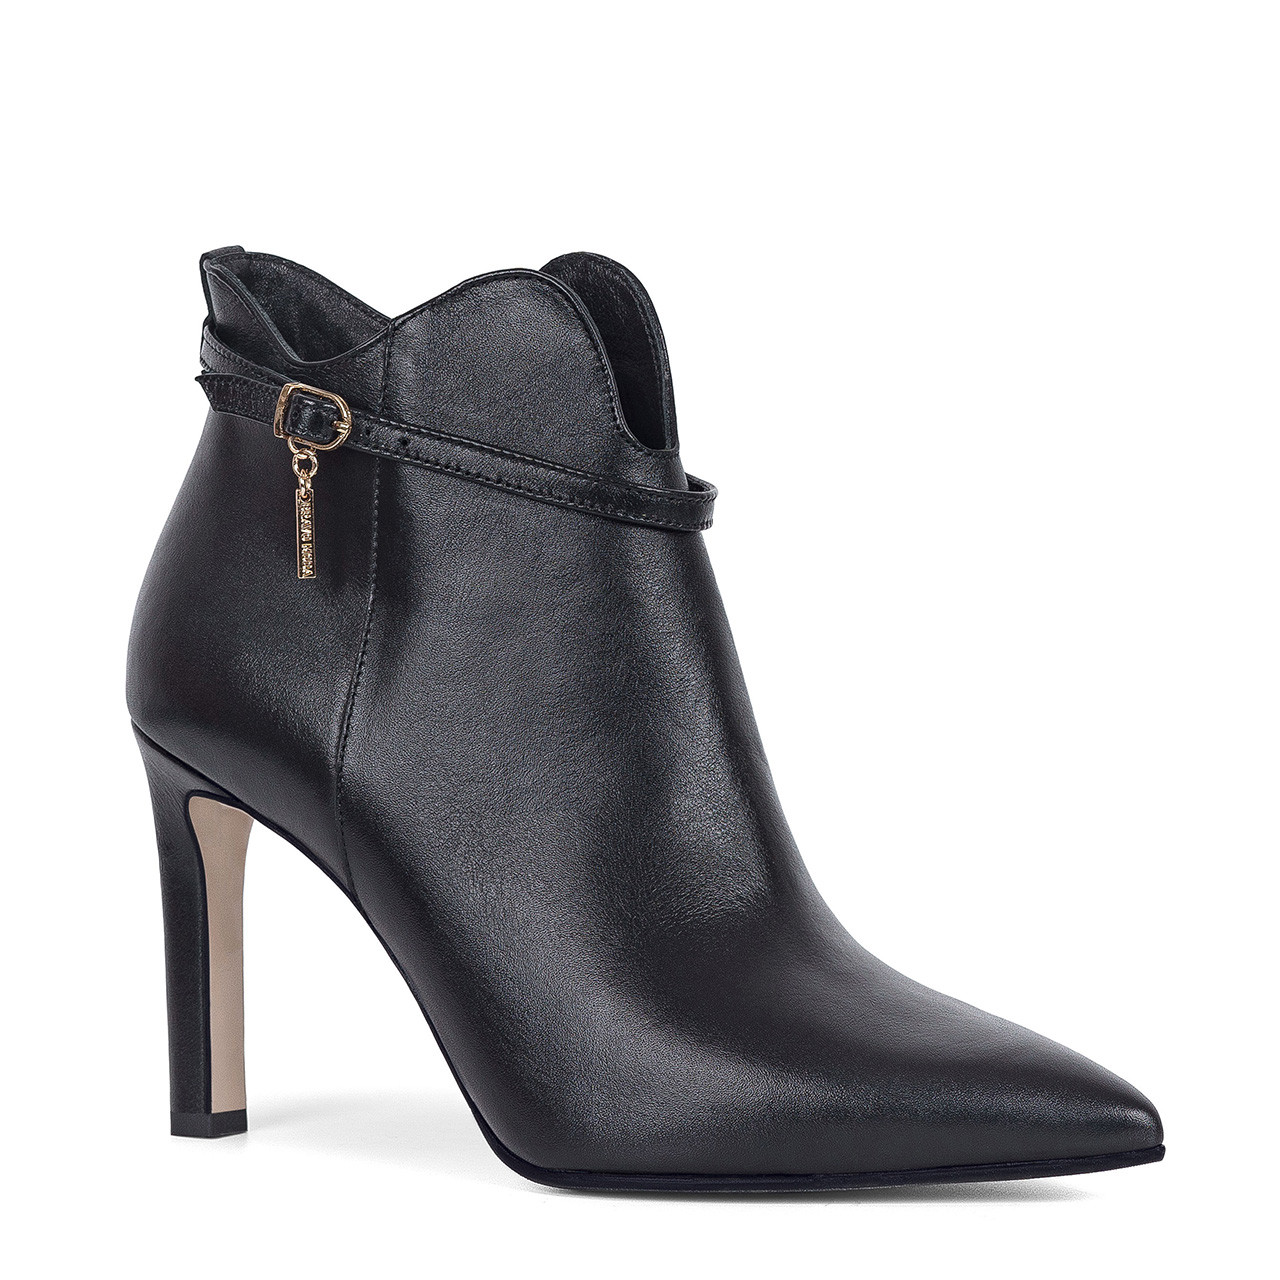 Designer black leather high heel ankle boots